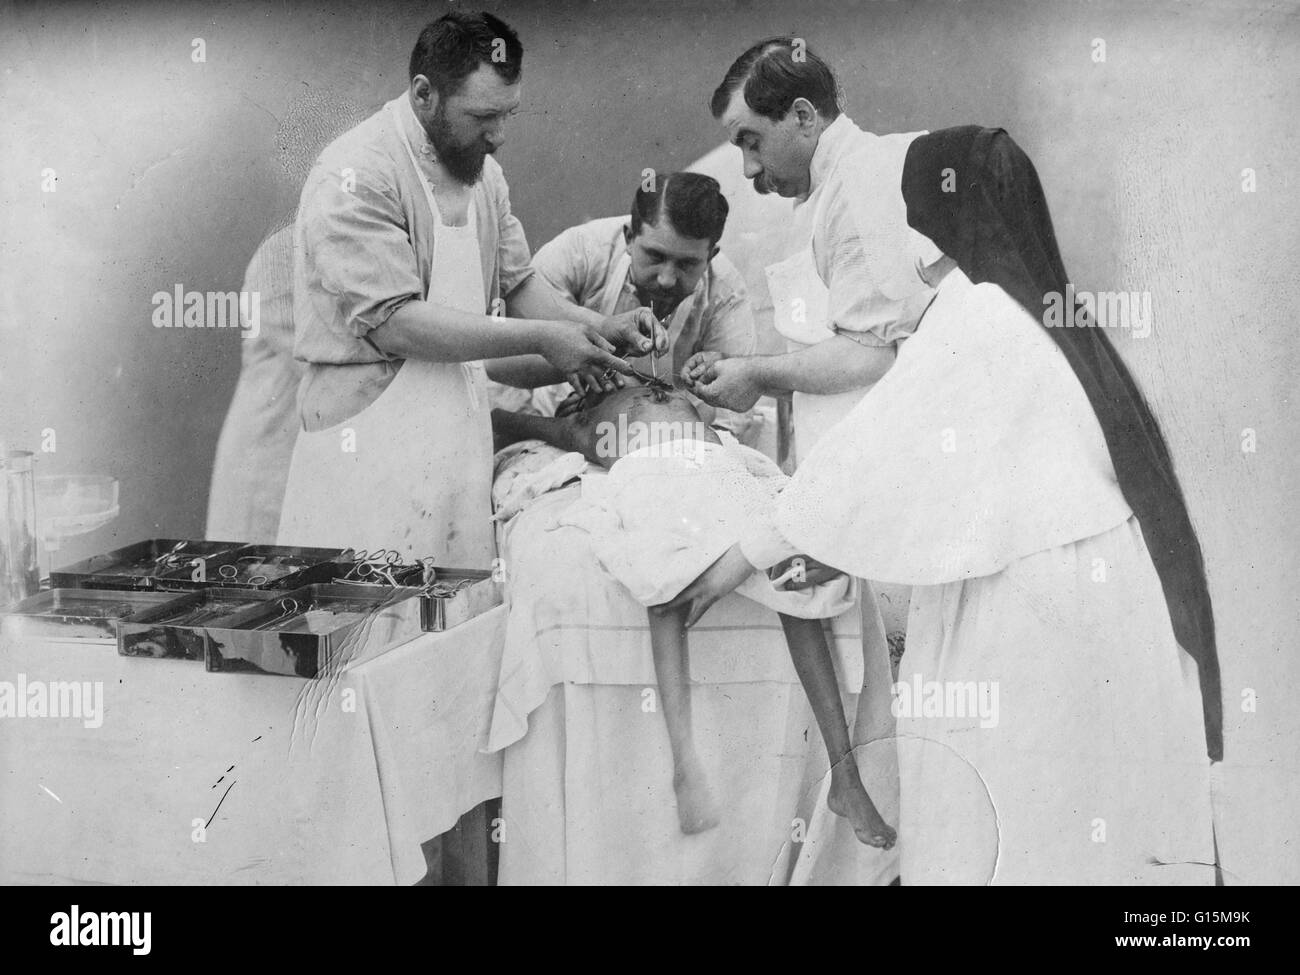 Eugène-Louis Doyen (16 dicembre 1859 - 21 novembre 1916) era un chirurgo francese. Doyen era un esperto e innovativo medico. Egli è stato un pioniere nell'uso di elettrobisturi e elettrocoagulazione. Egli aveva un vivo interesse per la fotografia e la cinematografia, Foto Stock